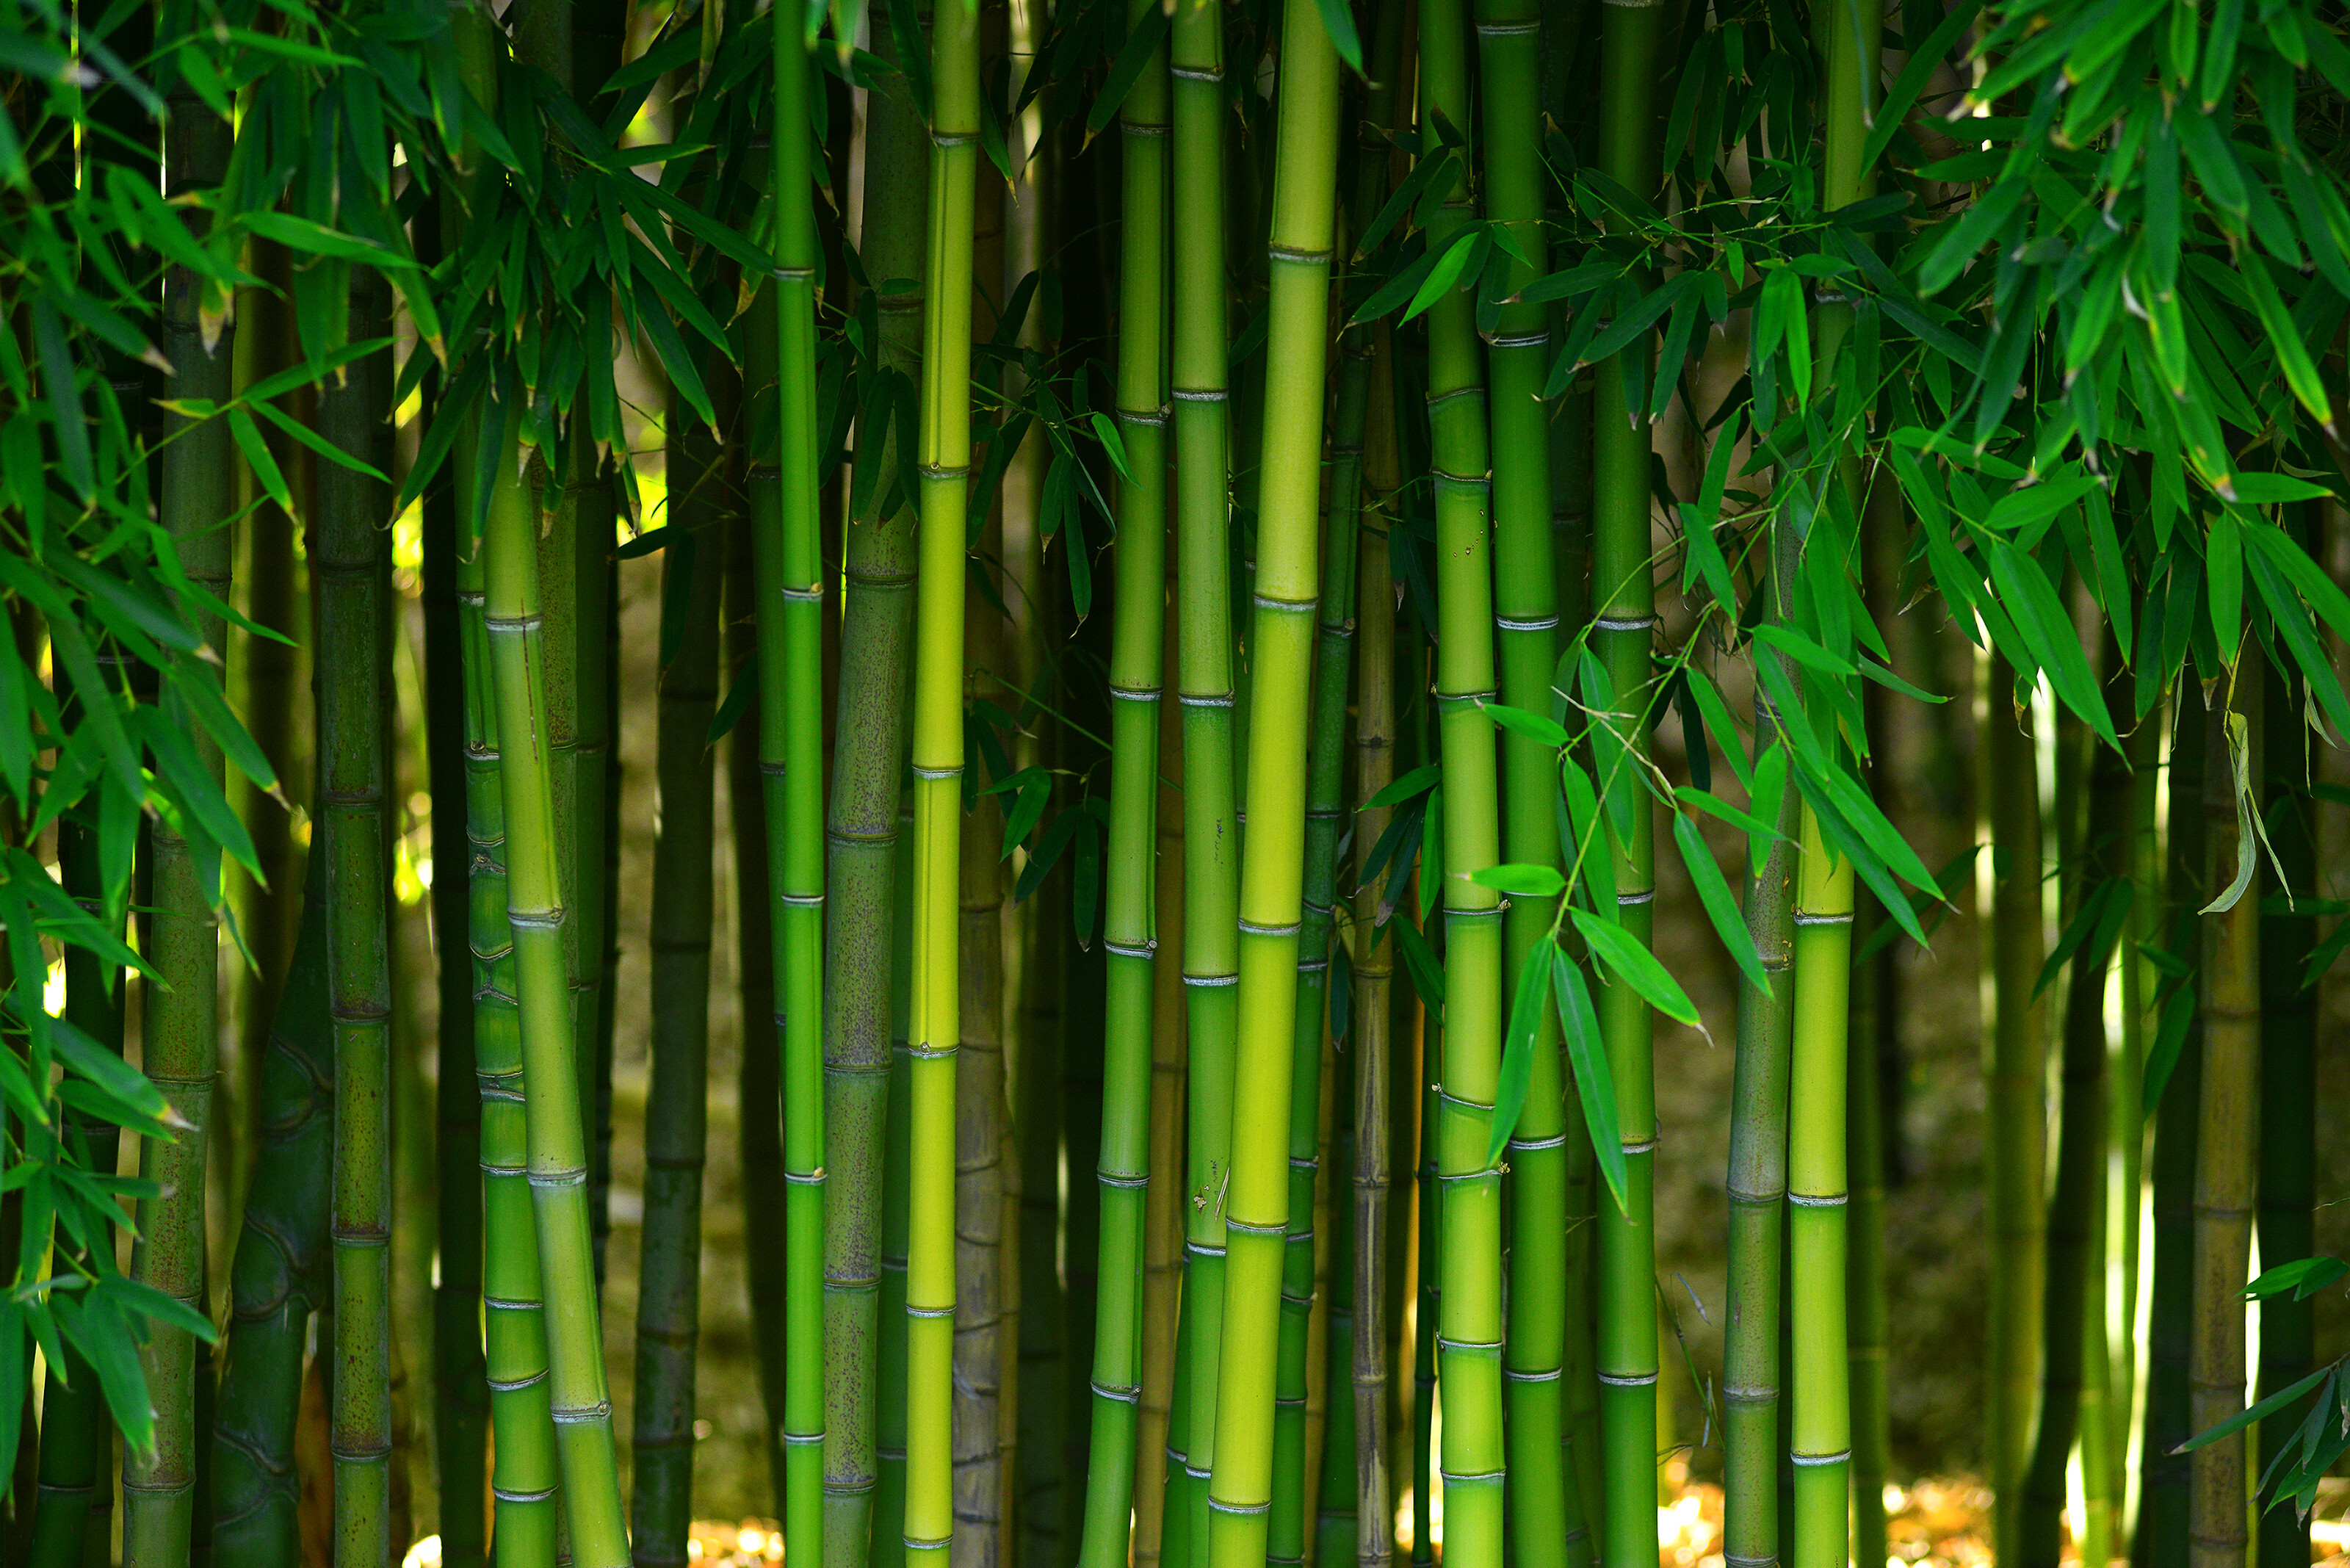 Ein saftig grüner Ausschnitt eines Bambuswaldes.